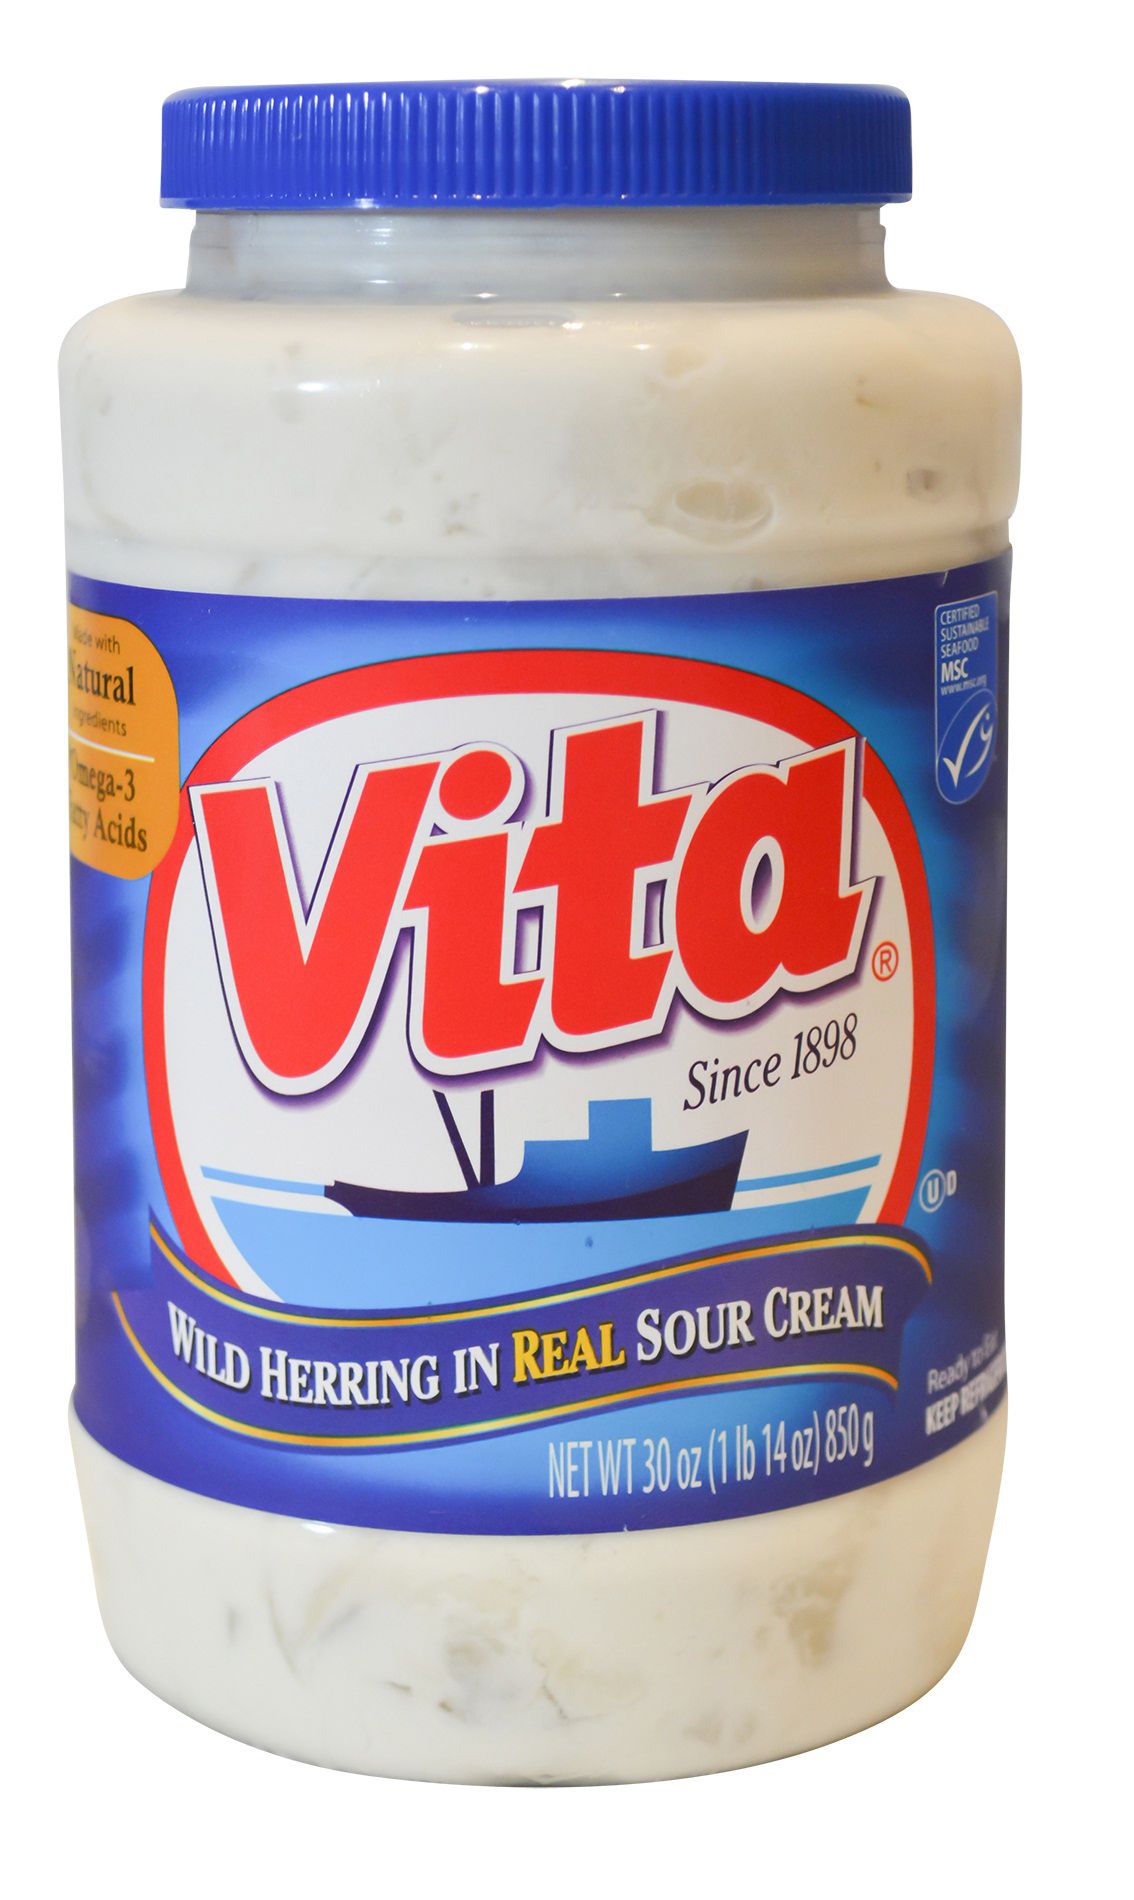 Vita Wild Herring in Real Sour Cream,  30 oz.